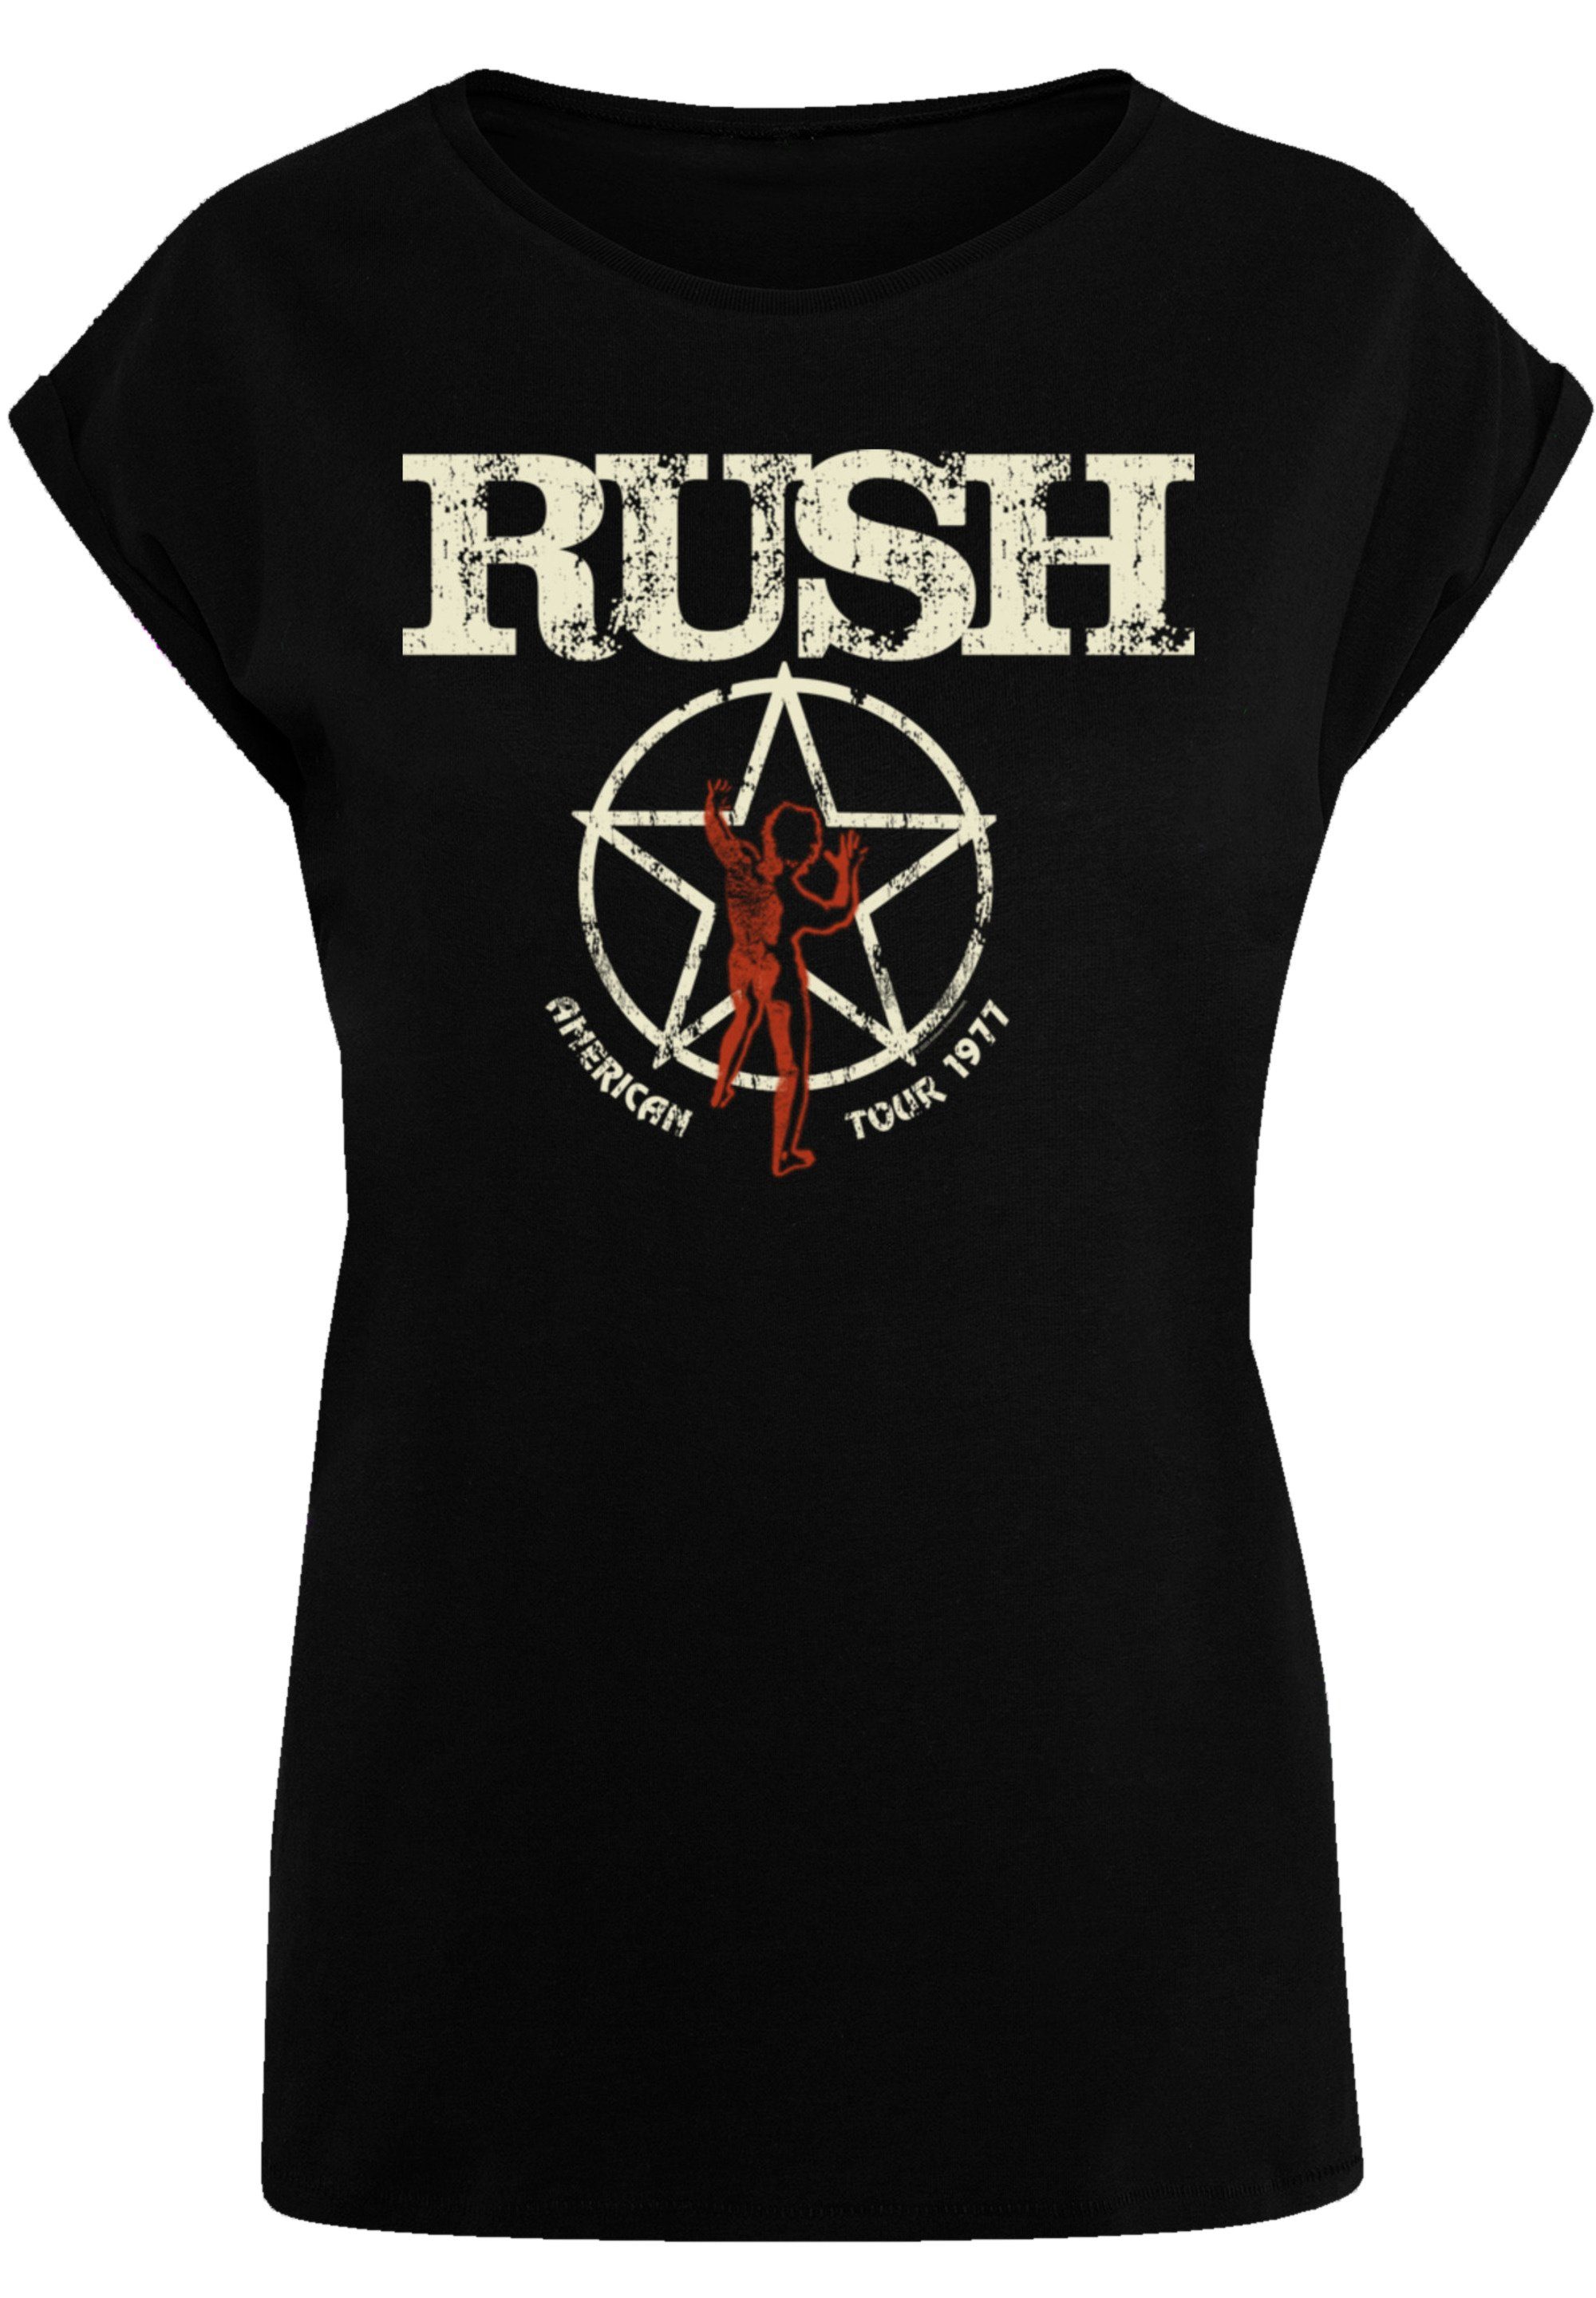 Premium Tragekomfort Qualität, American Rush Baumwollstoff F4NT4STIC Tour mit hohem Sehr 1977 Rock weicher Band T-Shirt